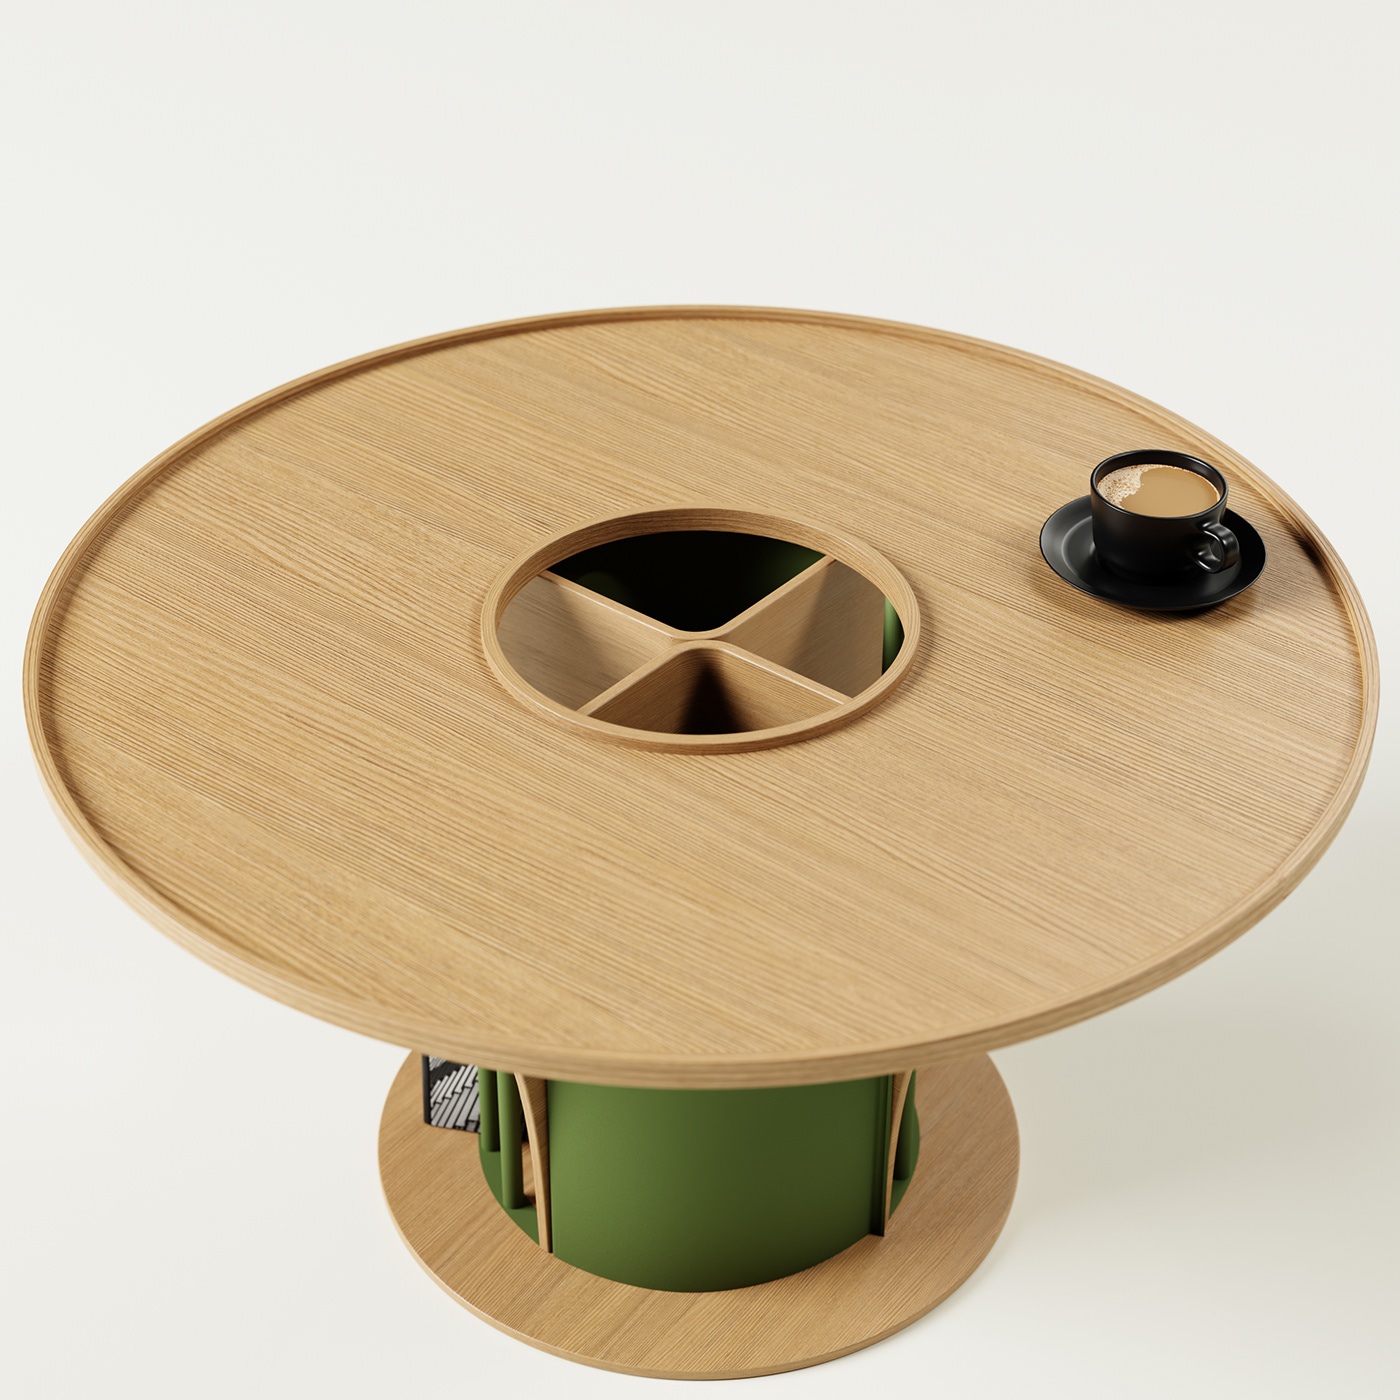 blender book holder coffe table furniture interior design  metal product design  wood